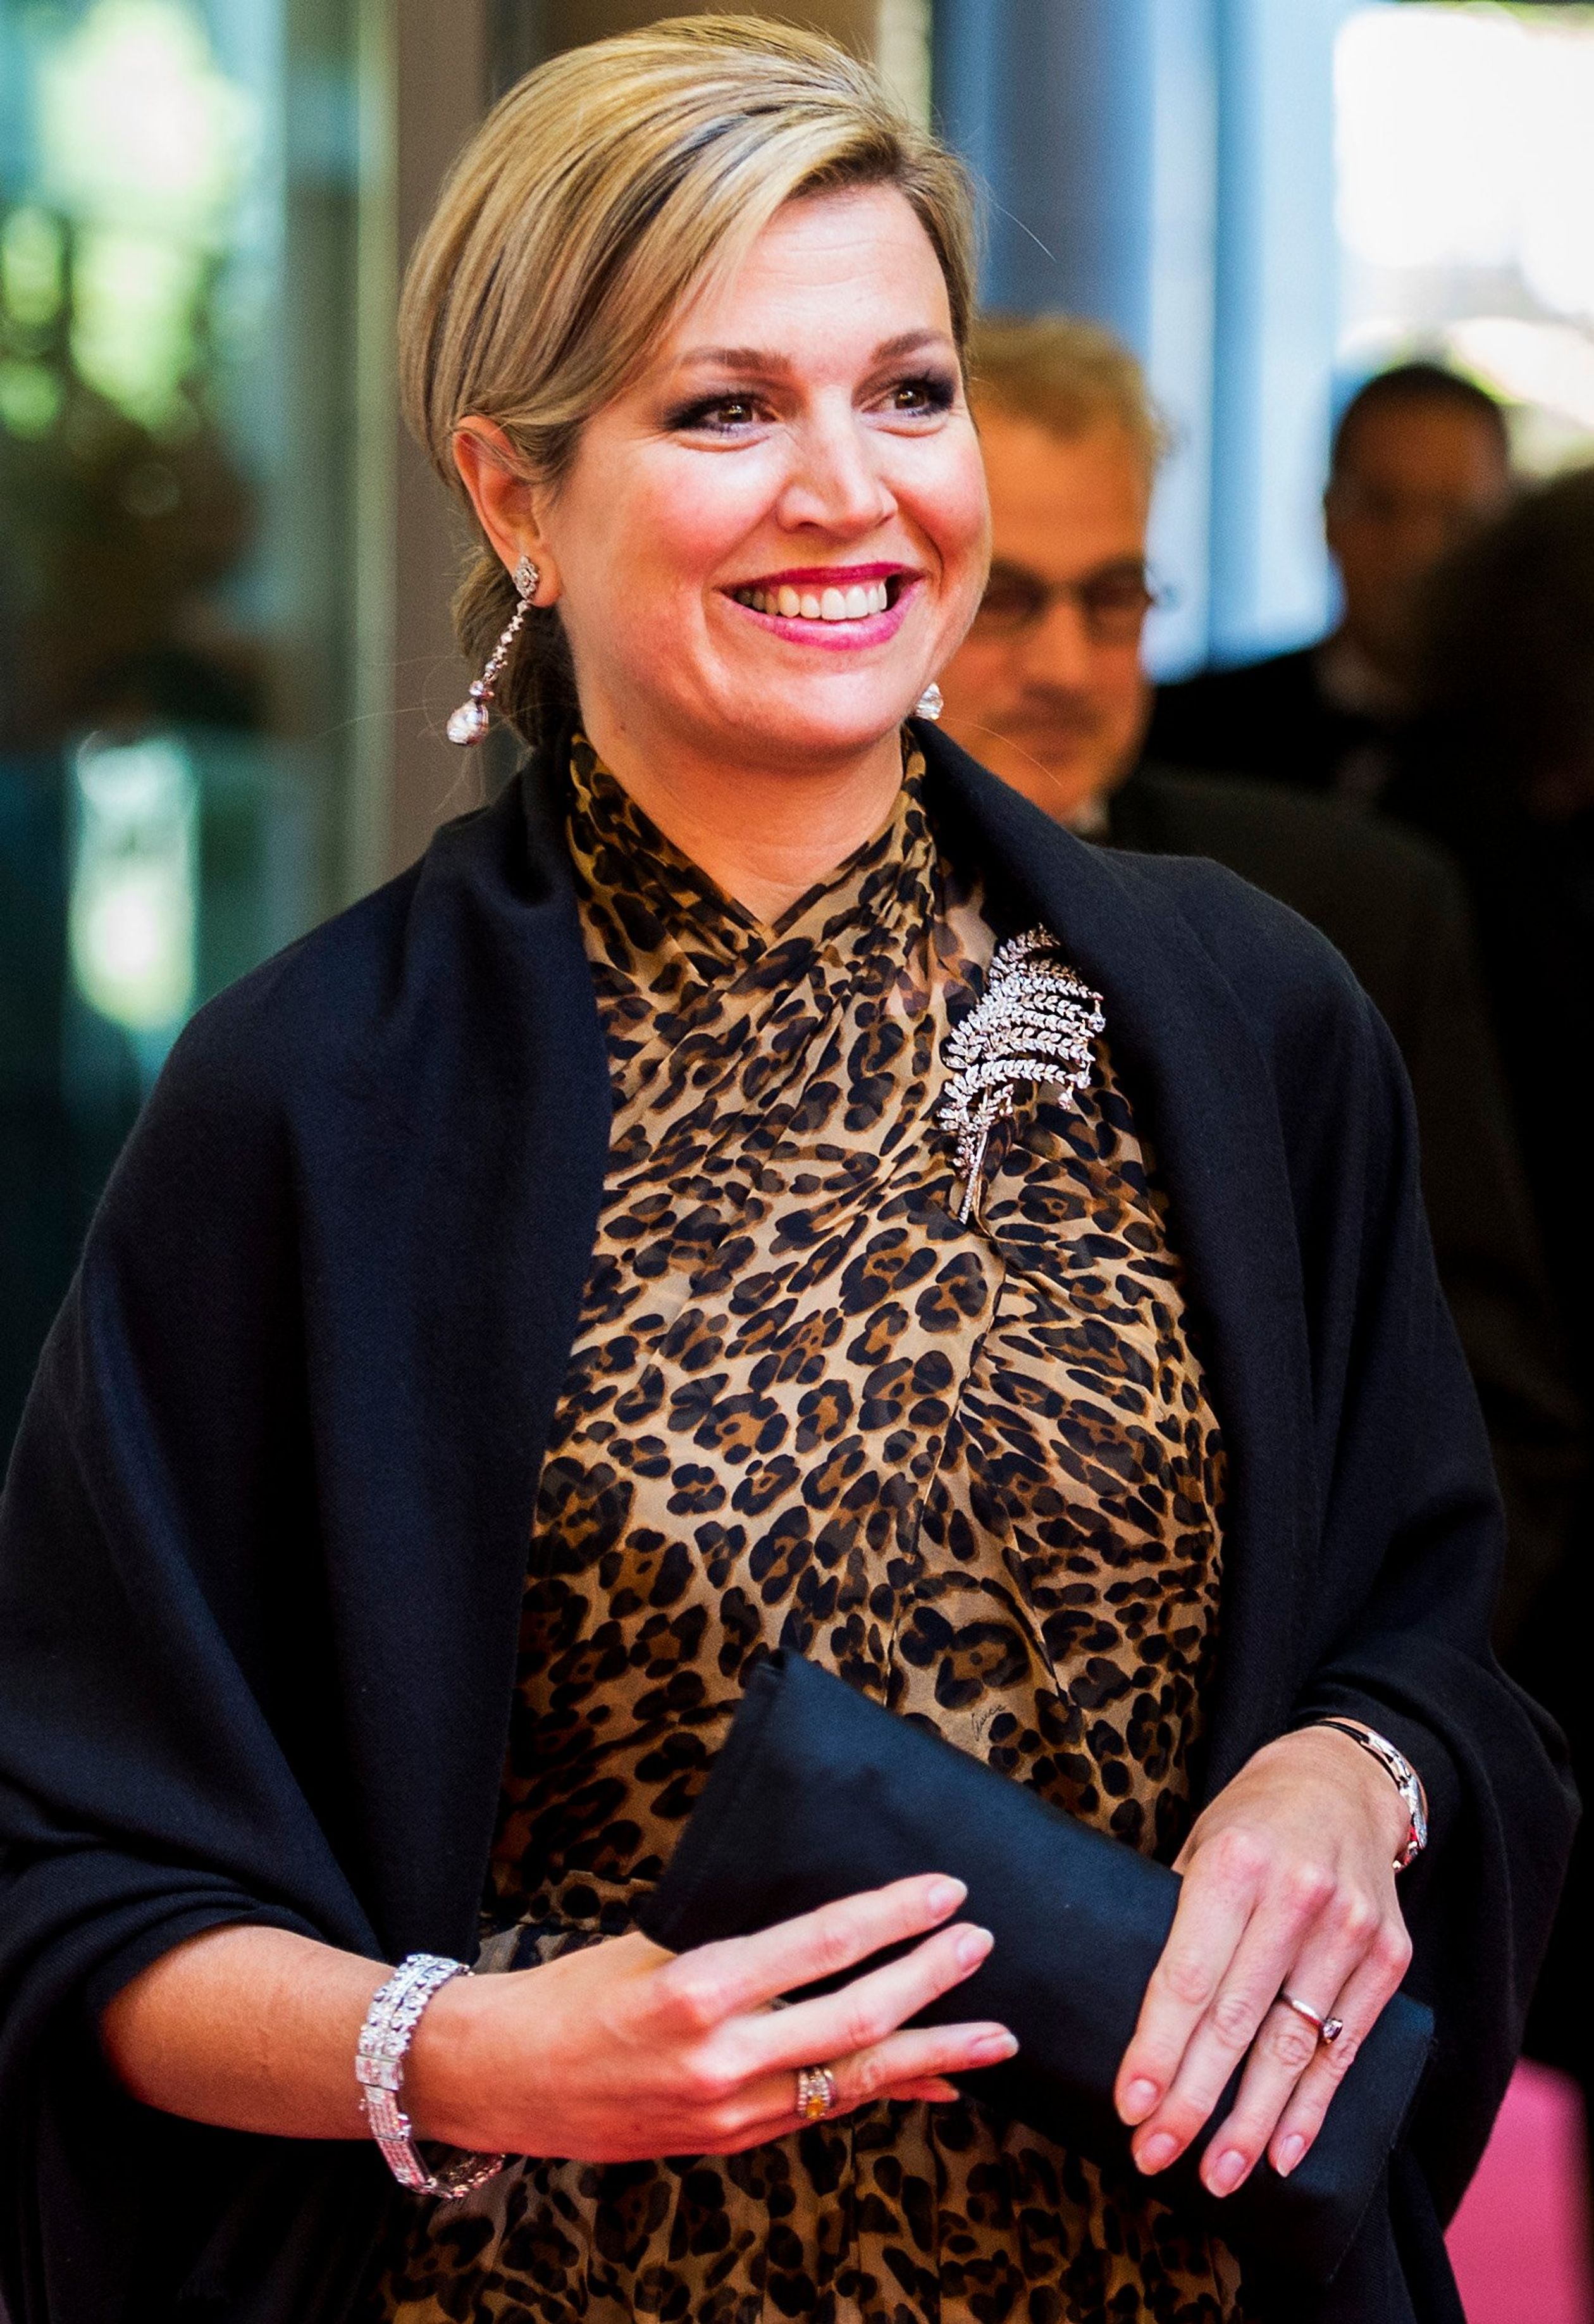 Koningin Máxima arriveert in een japon met jaguarprint bij De Nederlandsche Bank voor de uitreiking